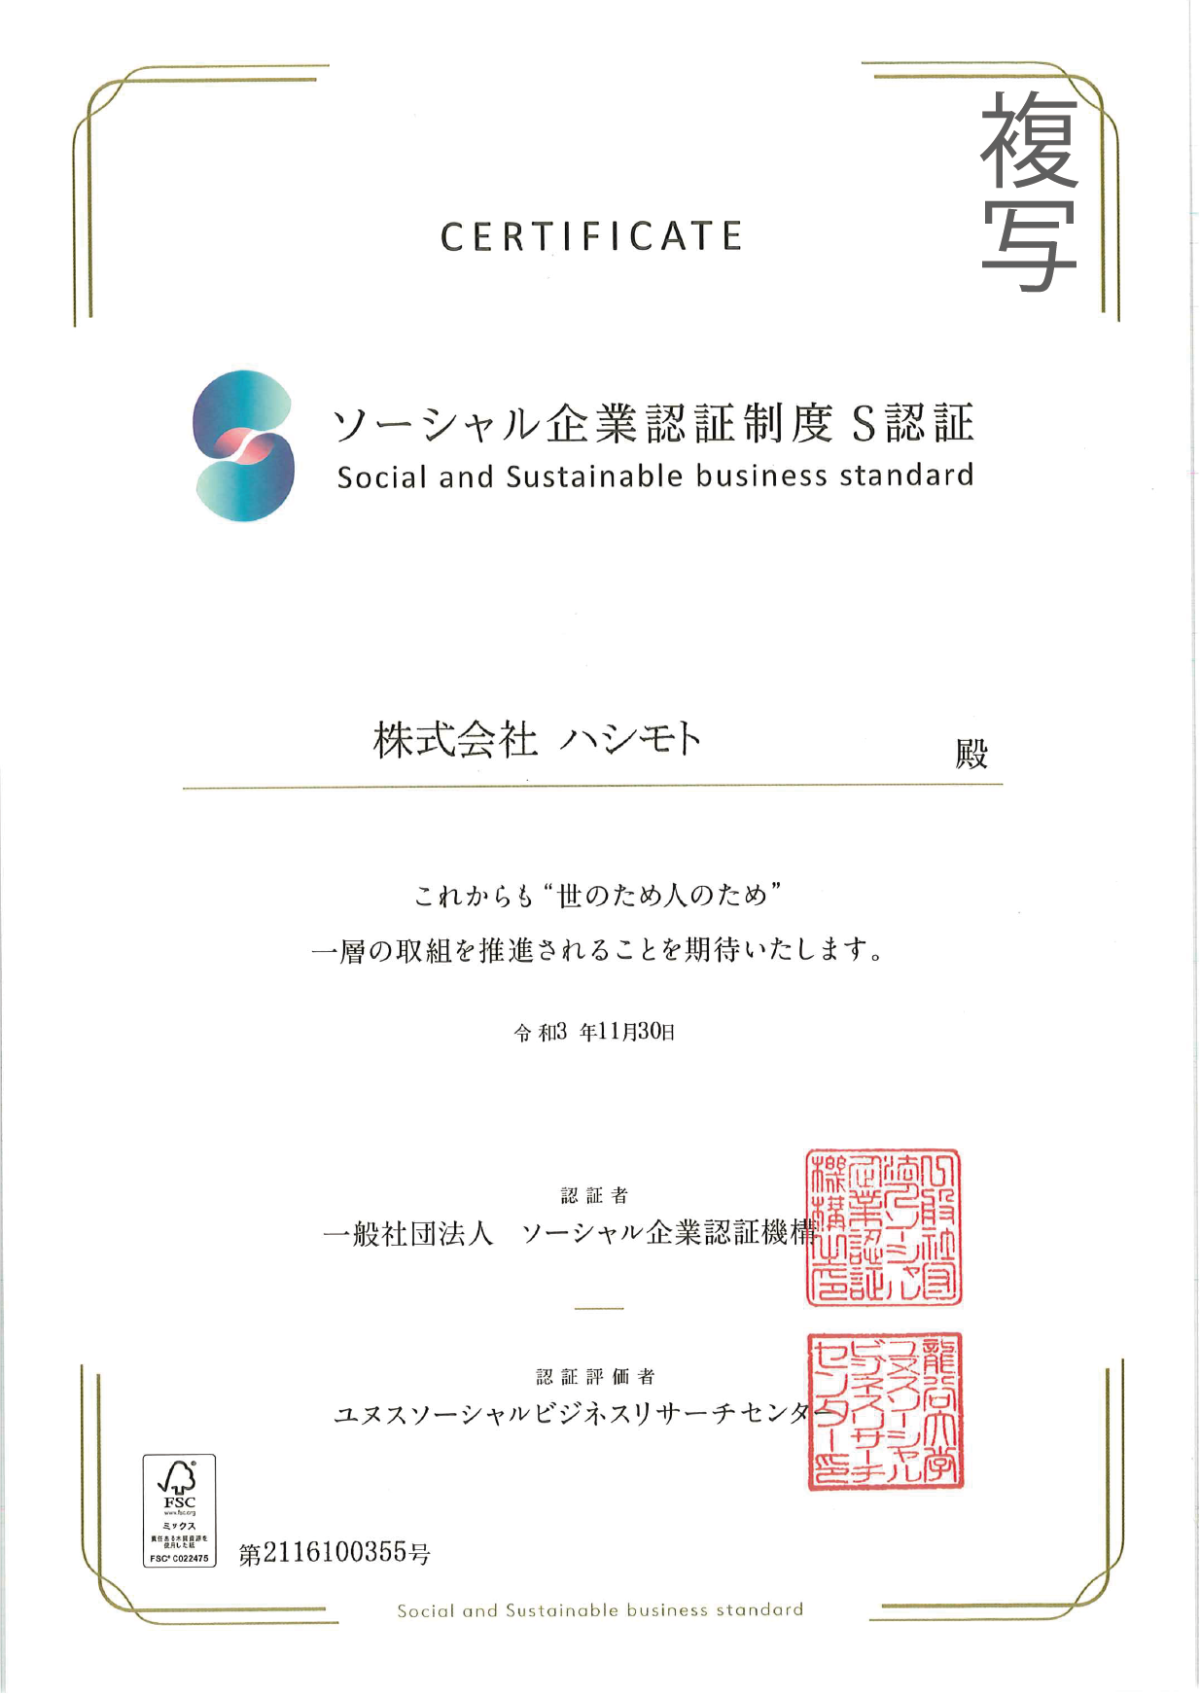 株式会社ハシモトがソーシャル企業認証制度S認証に選ばれました!!